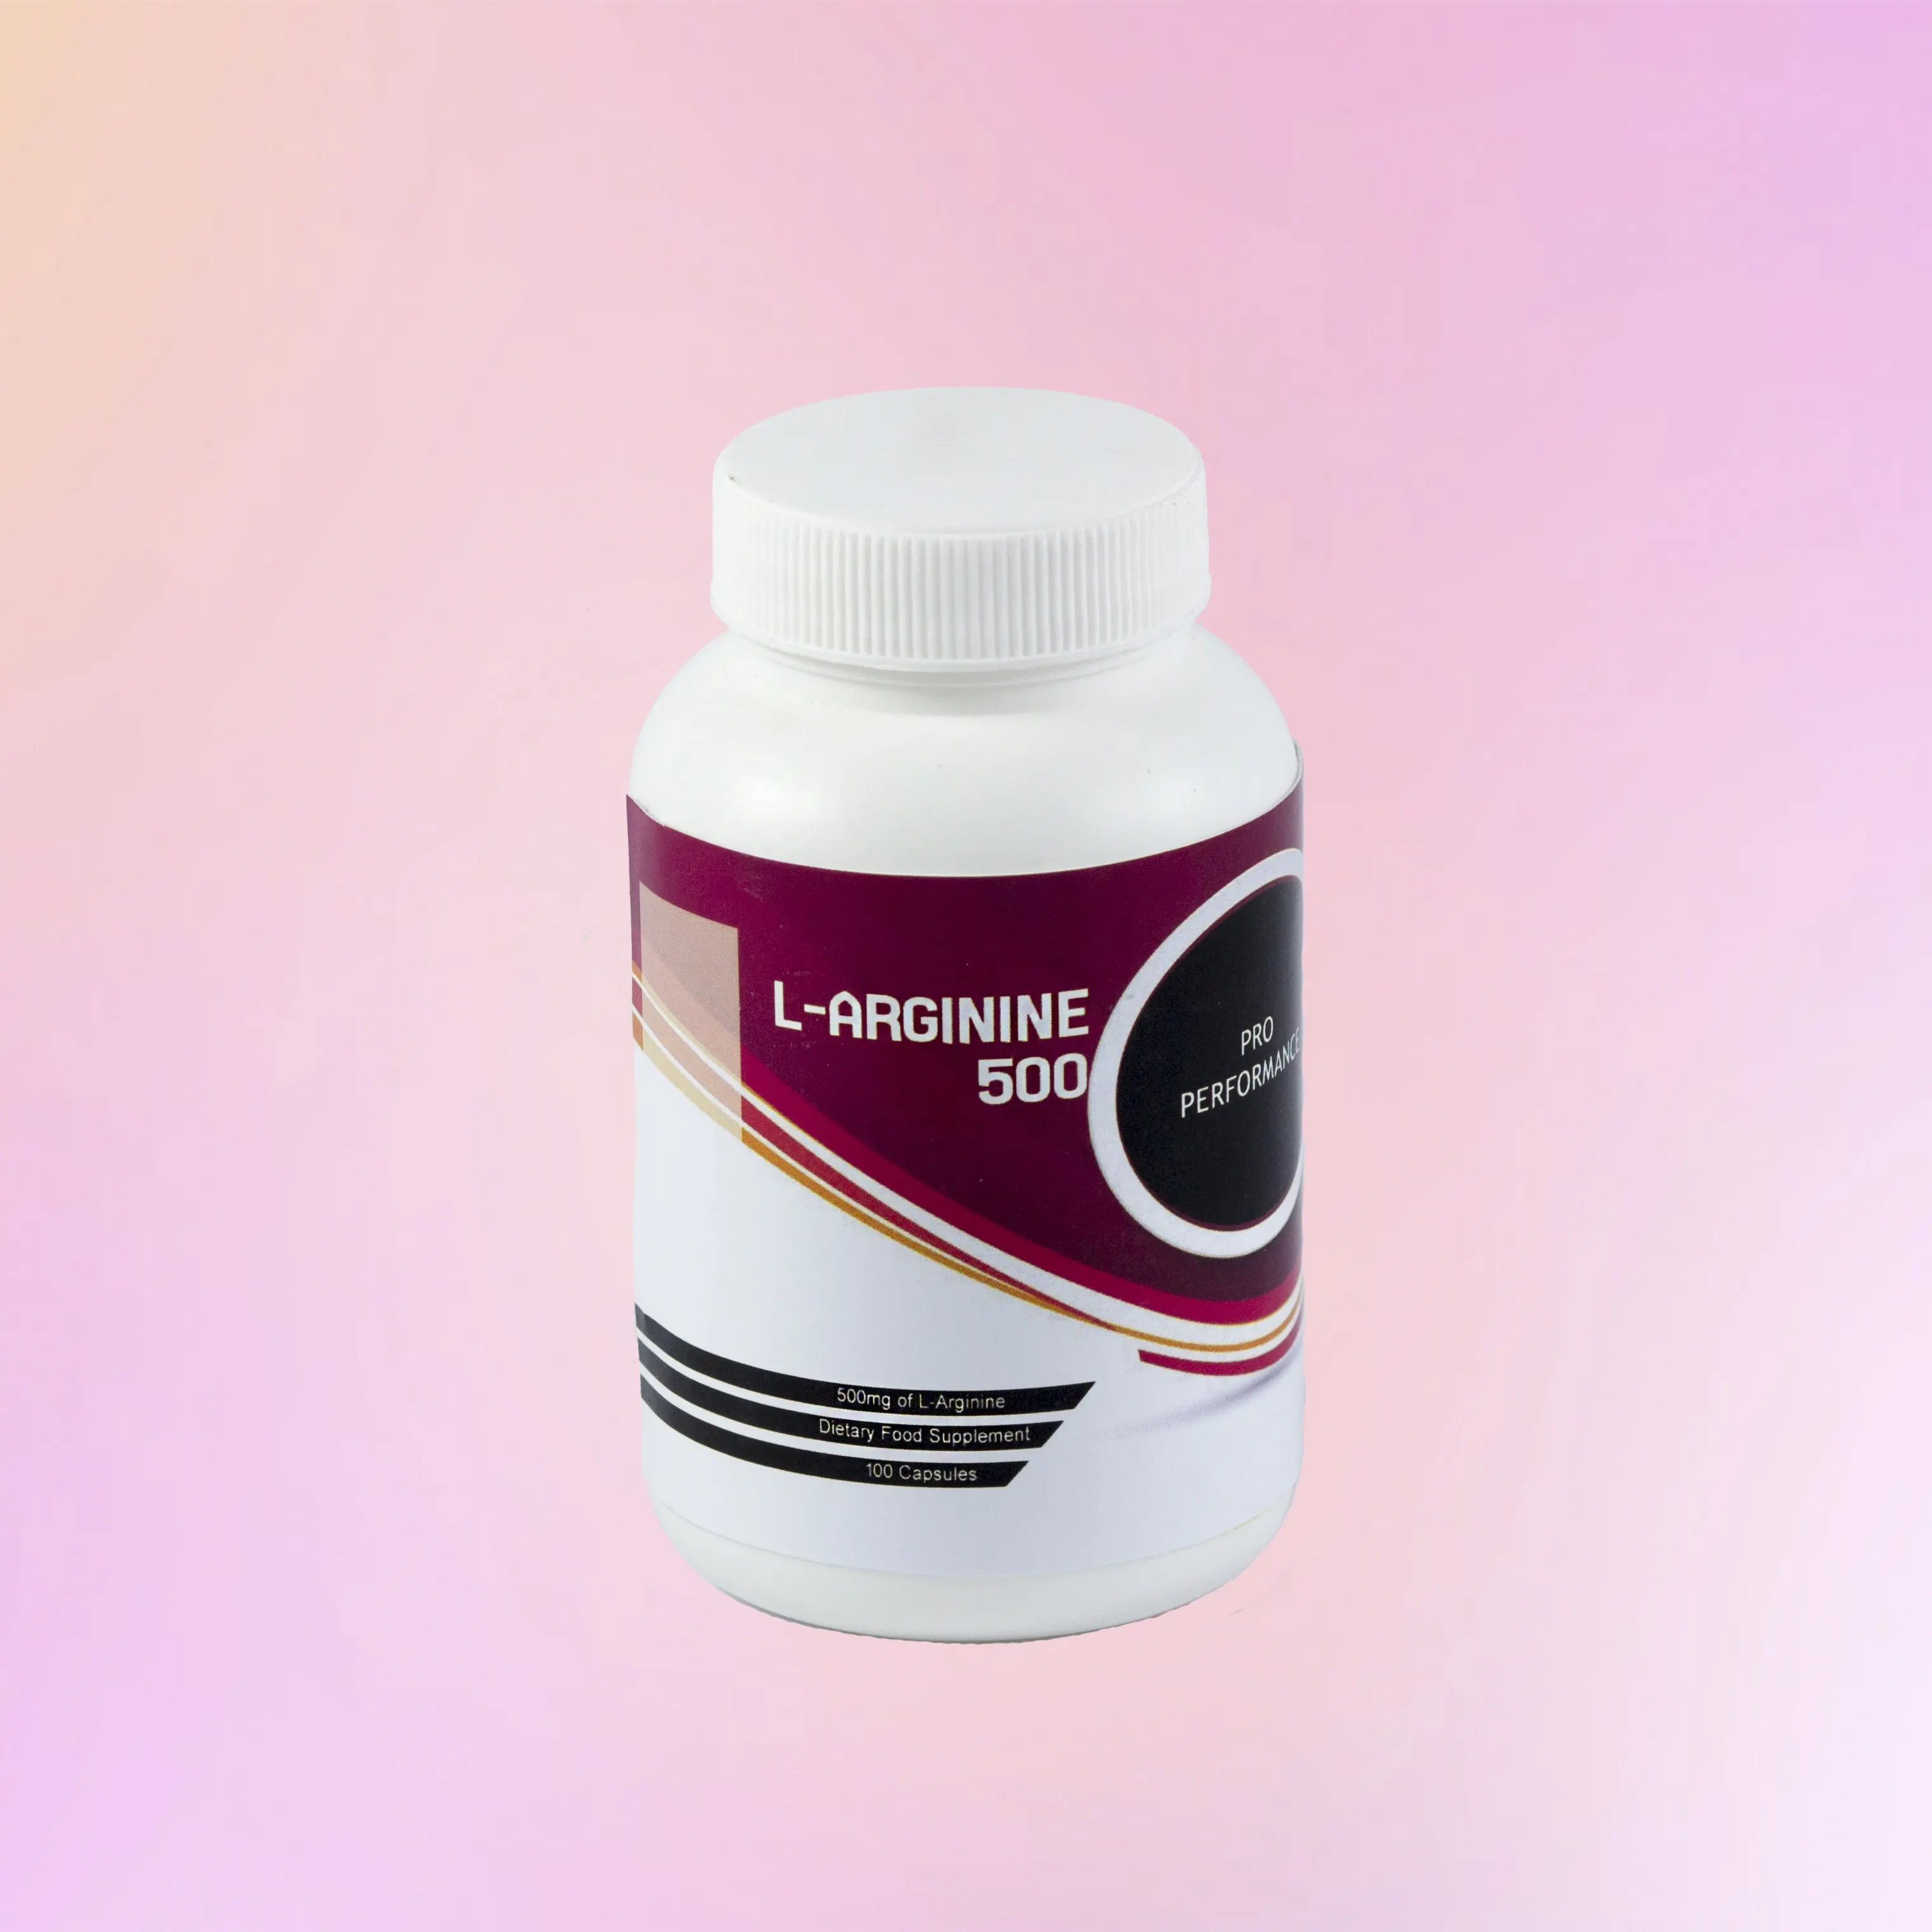 Premium-L-Arginin-Kapsel für Männer und Frauen für zusätzliche Ausdauer